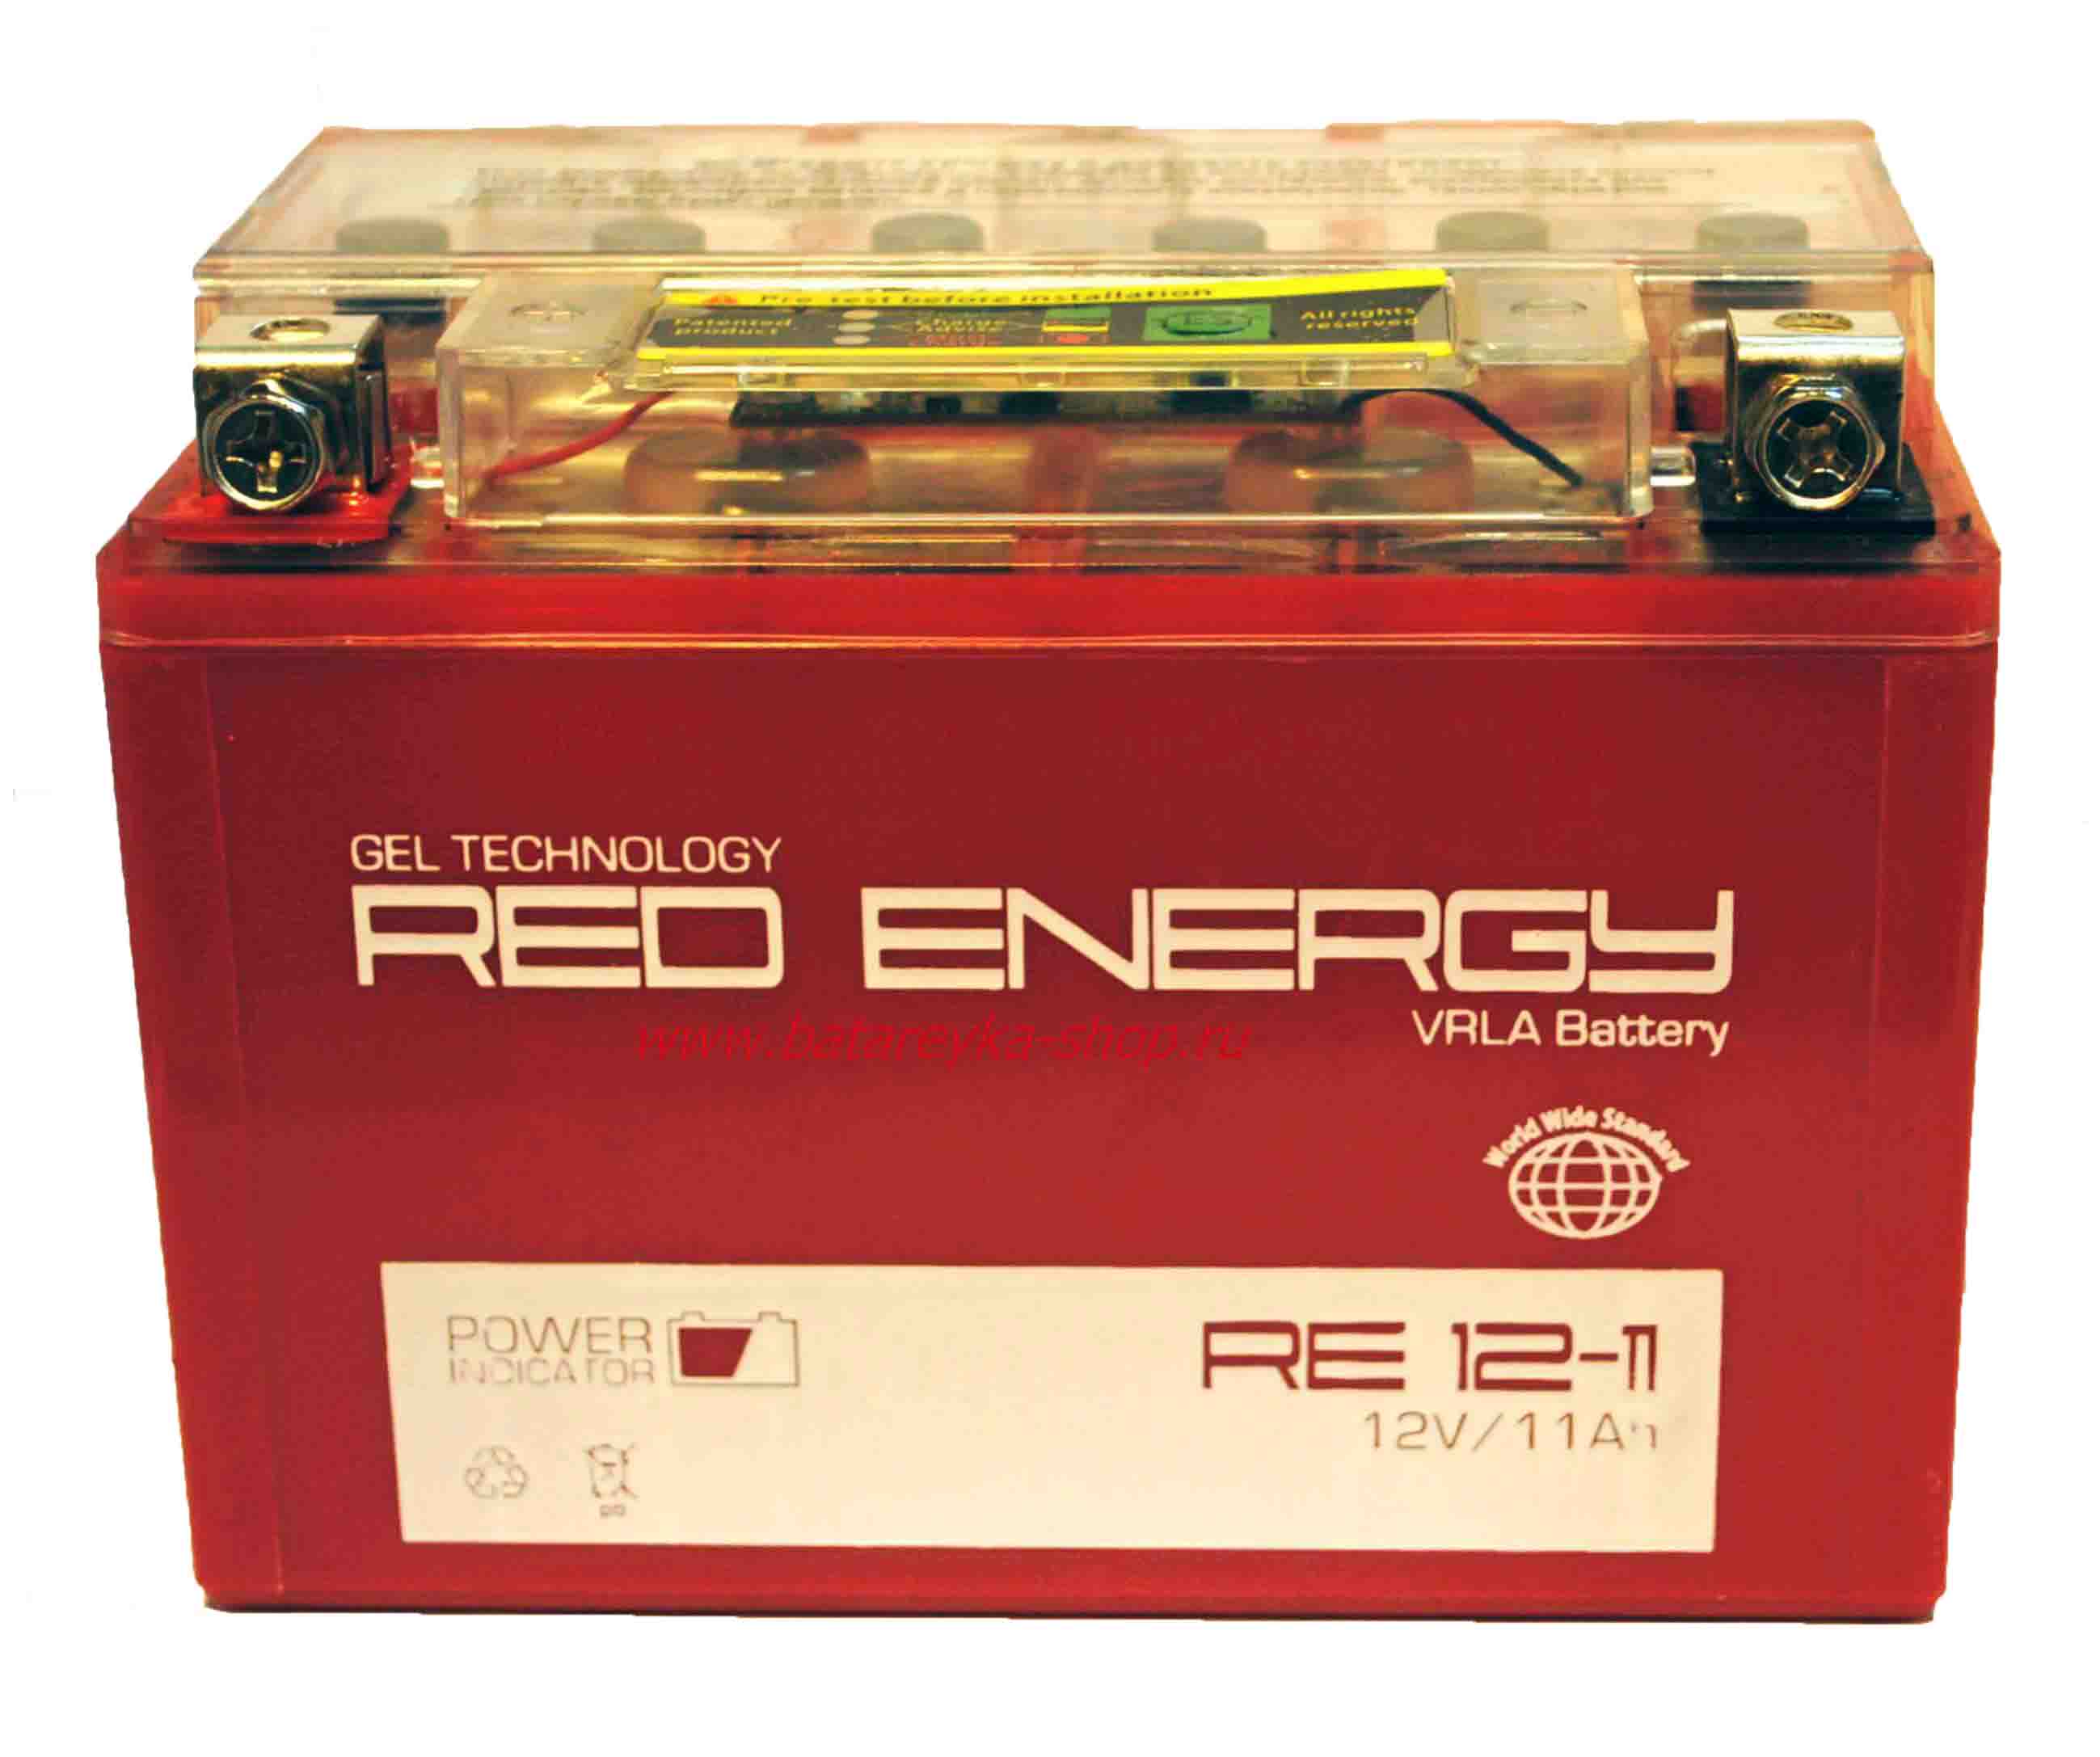 Акбавто. Гелевый аккумулятор для мотоцикла 12 вольт Red Energy. Мото аккумулятор гелевый Red Energy. Аккумулятор Red Energy 12v. Аккумулятор ред Энерджи 12 вольт.